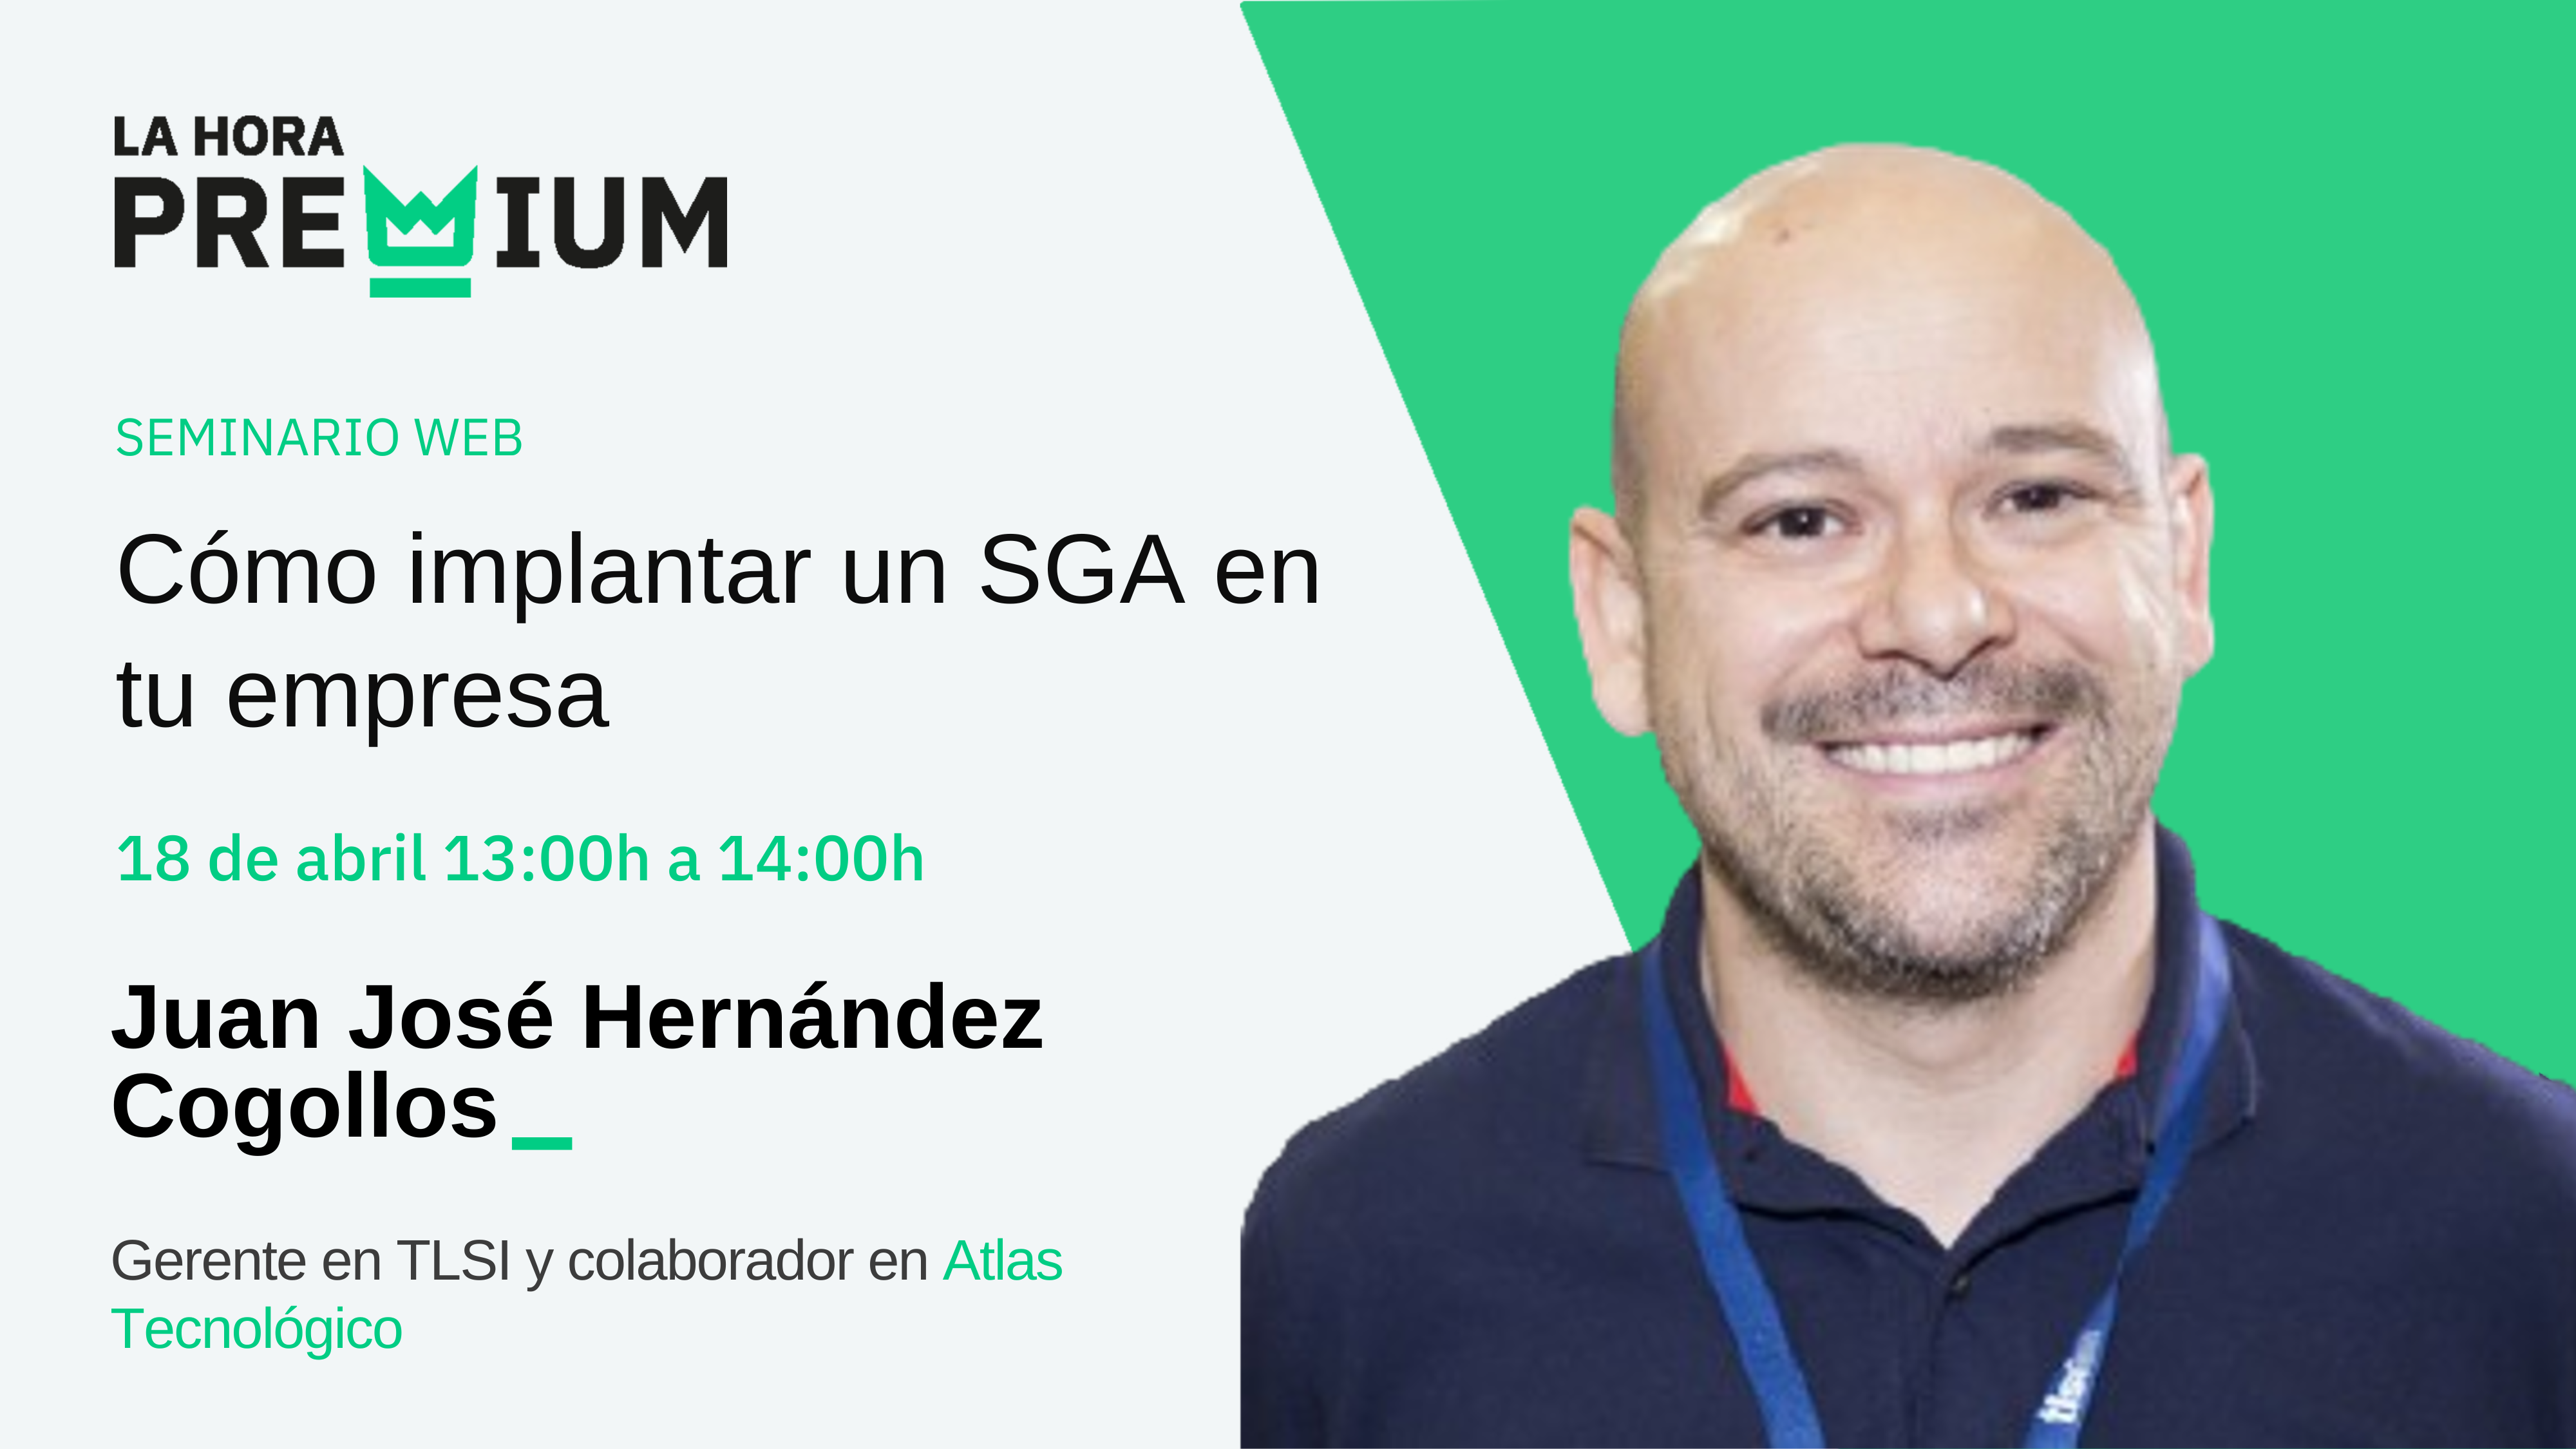 Juan José Hernández Cogollos hablará acerca de «Cómo implantar un SGA en tu empresa» en la Hora Premium